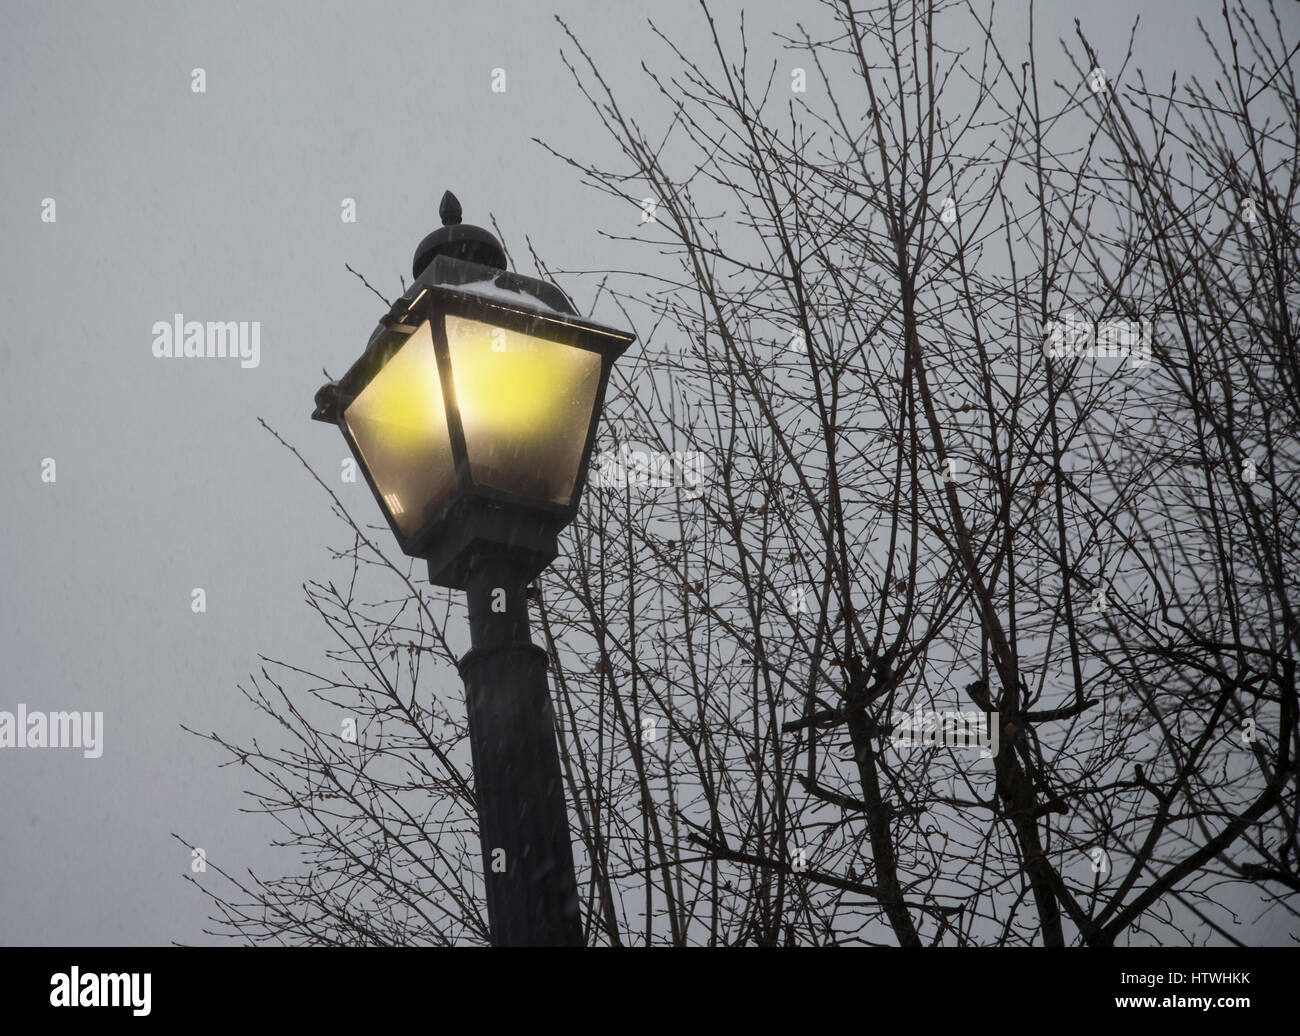 Un lampost durante una tormenta de nieve Foto de stock